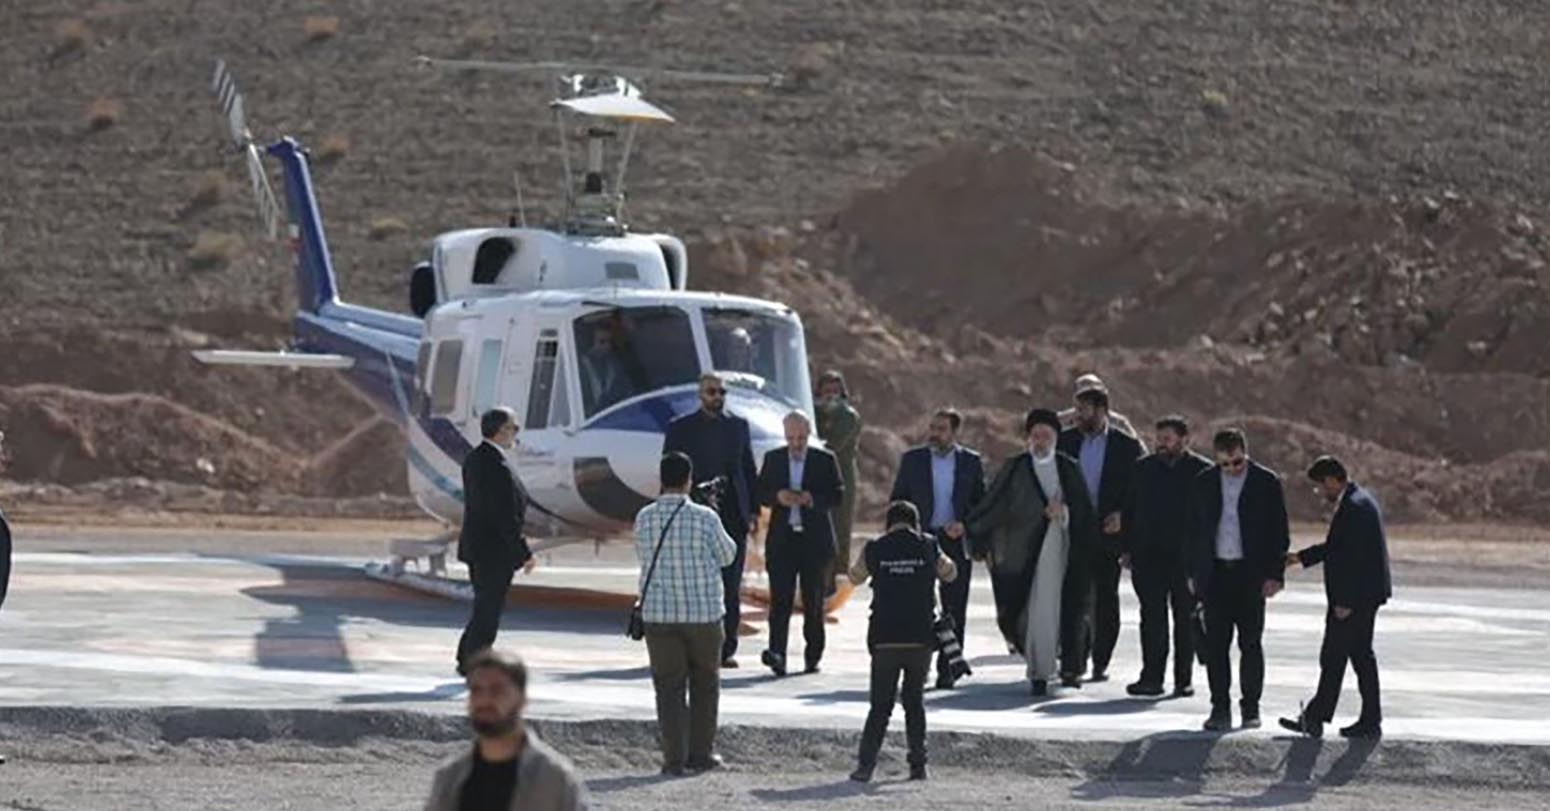 इरानको सरकारी टिभीले भन्यो– राष्ट्रपति सवार हेलिकप्टर दुर्घटनास्थलमा कोही पनि बाँचेको संकेत छैन